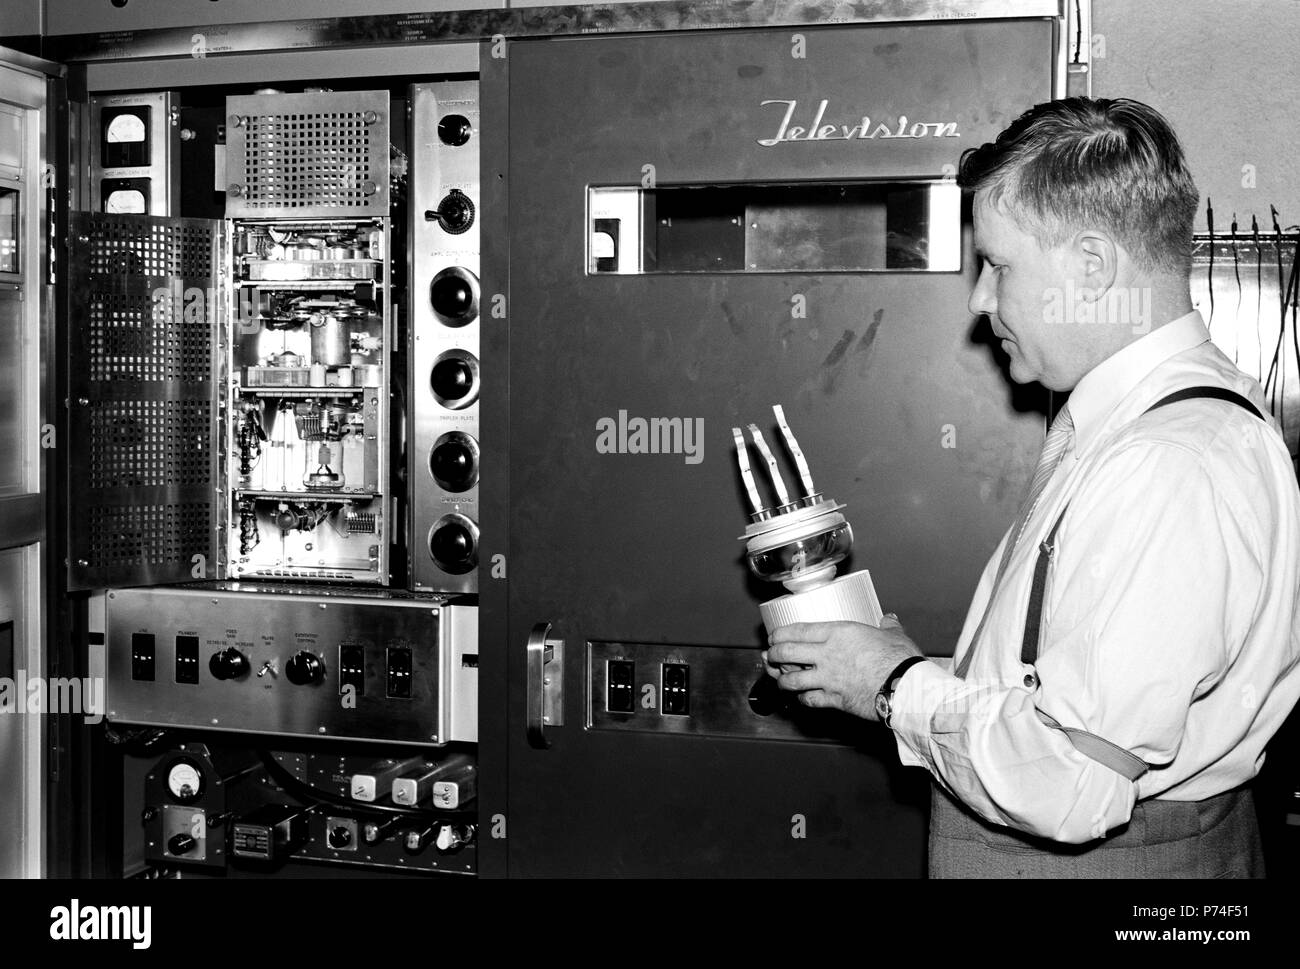 Yleisradio. Televisiotoiminnan alku. Yleisradion omalla työpajalla on Yhdysvalloista  29.6.1956 saapunut televisiolähetin viritettävänä ja työtä johtaa insinööri Lauri Häkkinen.  Hän seisoo RCA:n televisiolähettimen (tyyppimerkintä RCA TT-2AH) kuvaosakaapin edessä  ja hänellä on kädessään kuvalähettimen pääteputki (tyyppimerkintä on 7C24) eli tehotriodi  jolla kehitettiin antenniin menevän kuvasignaalin 2 kW teho. Pääteputki oli myös RCA :n  omaa tuotantoa. Stock Photo